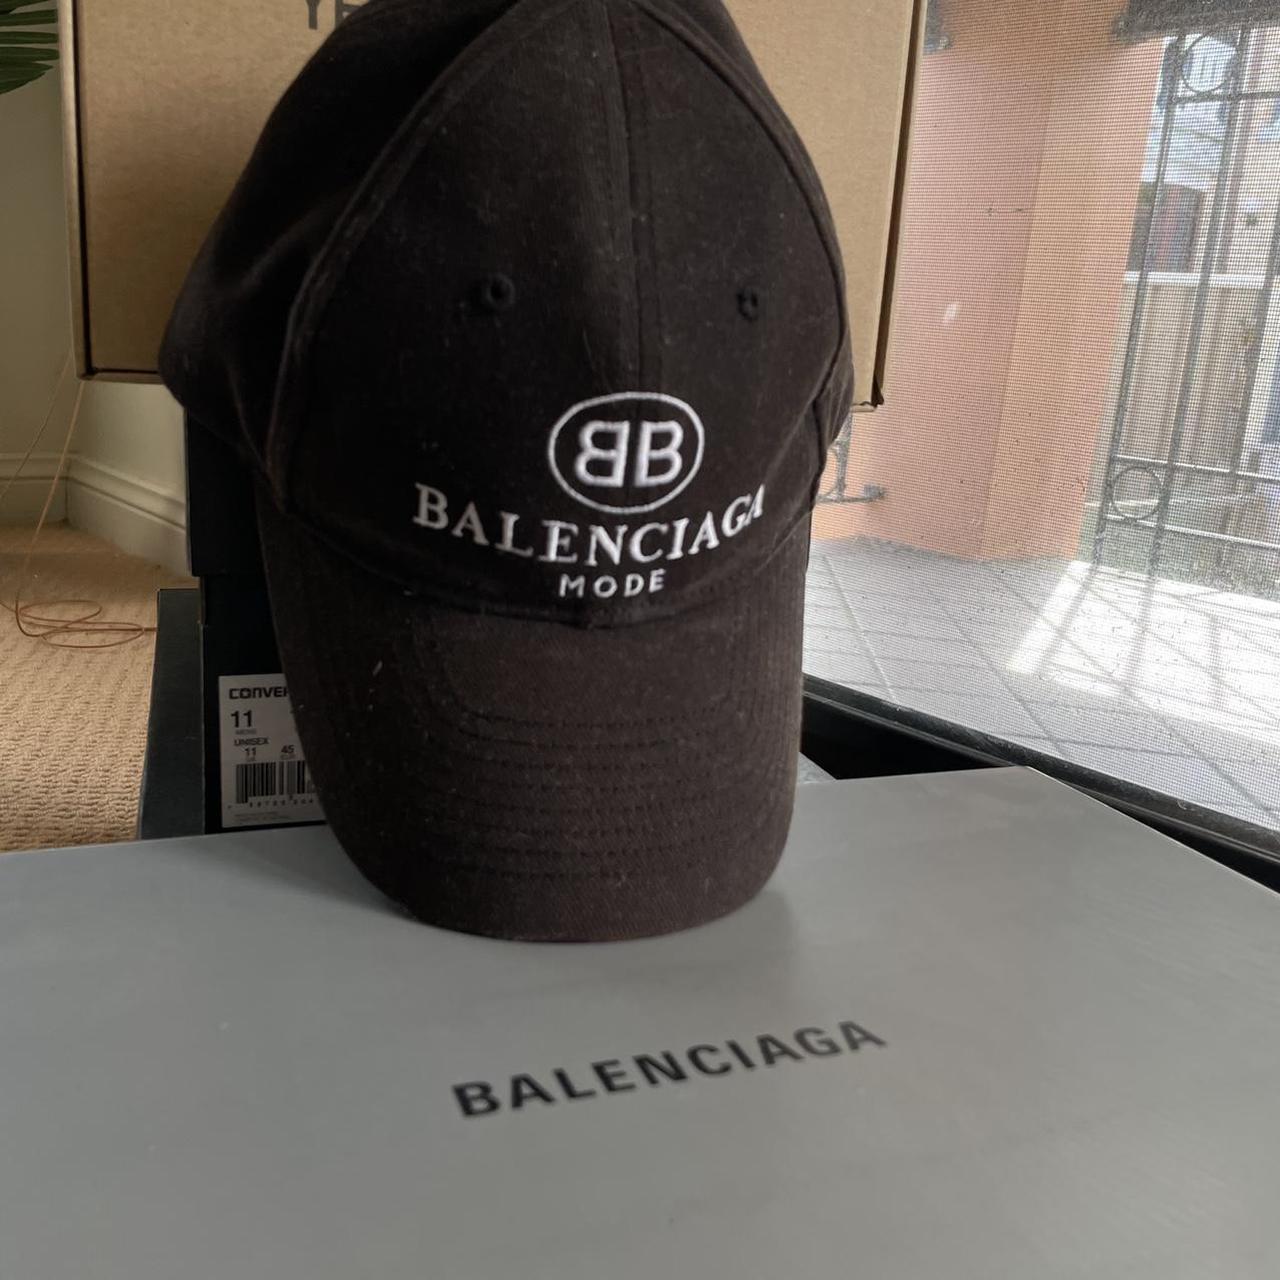 Balenciaga "Balenciaga Mode" cap. Good condition, - Depop